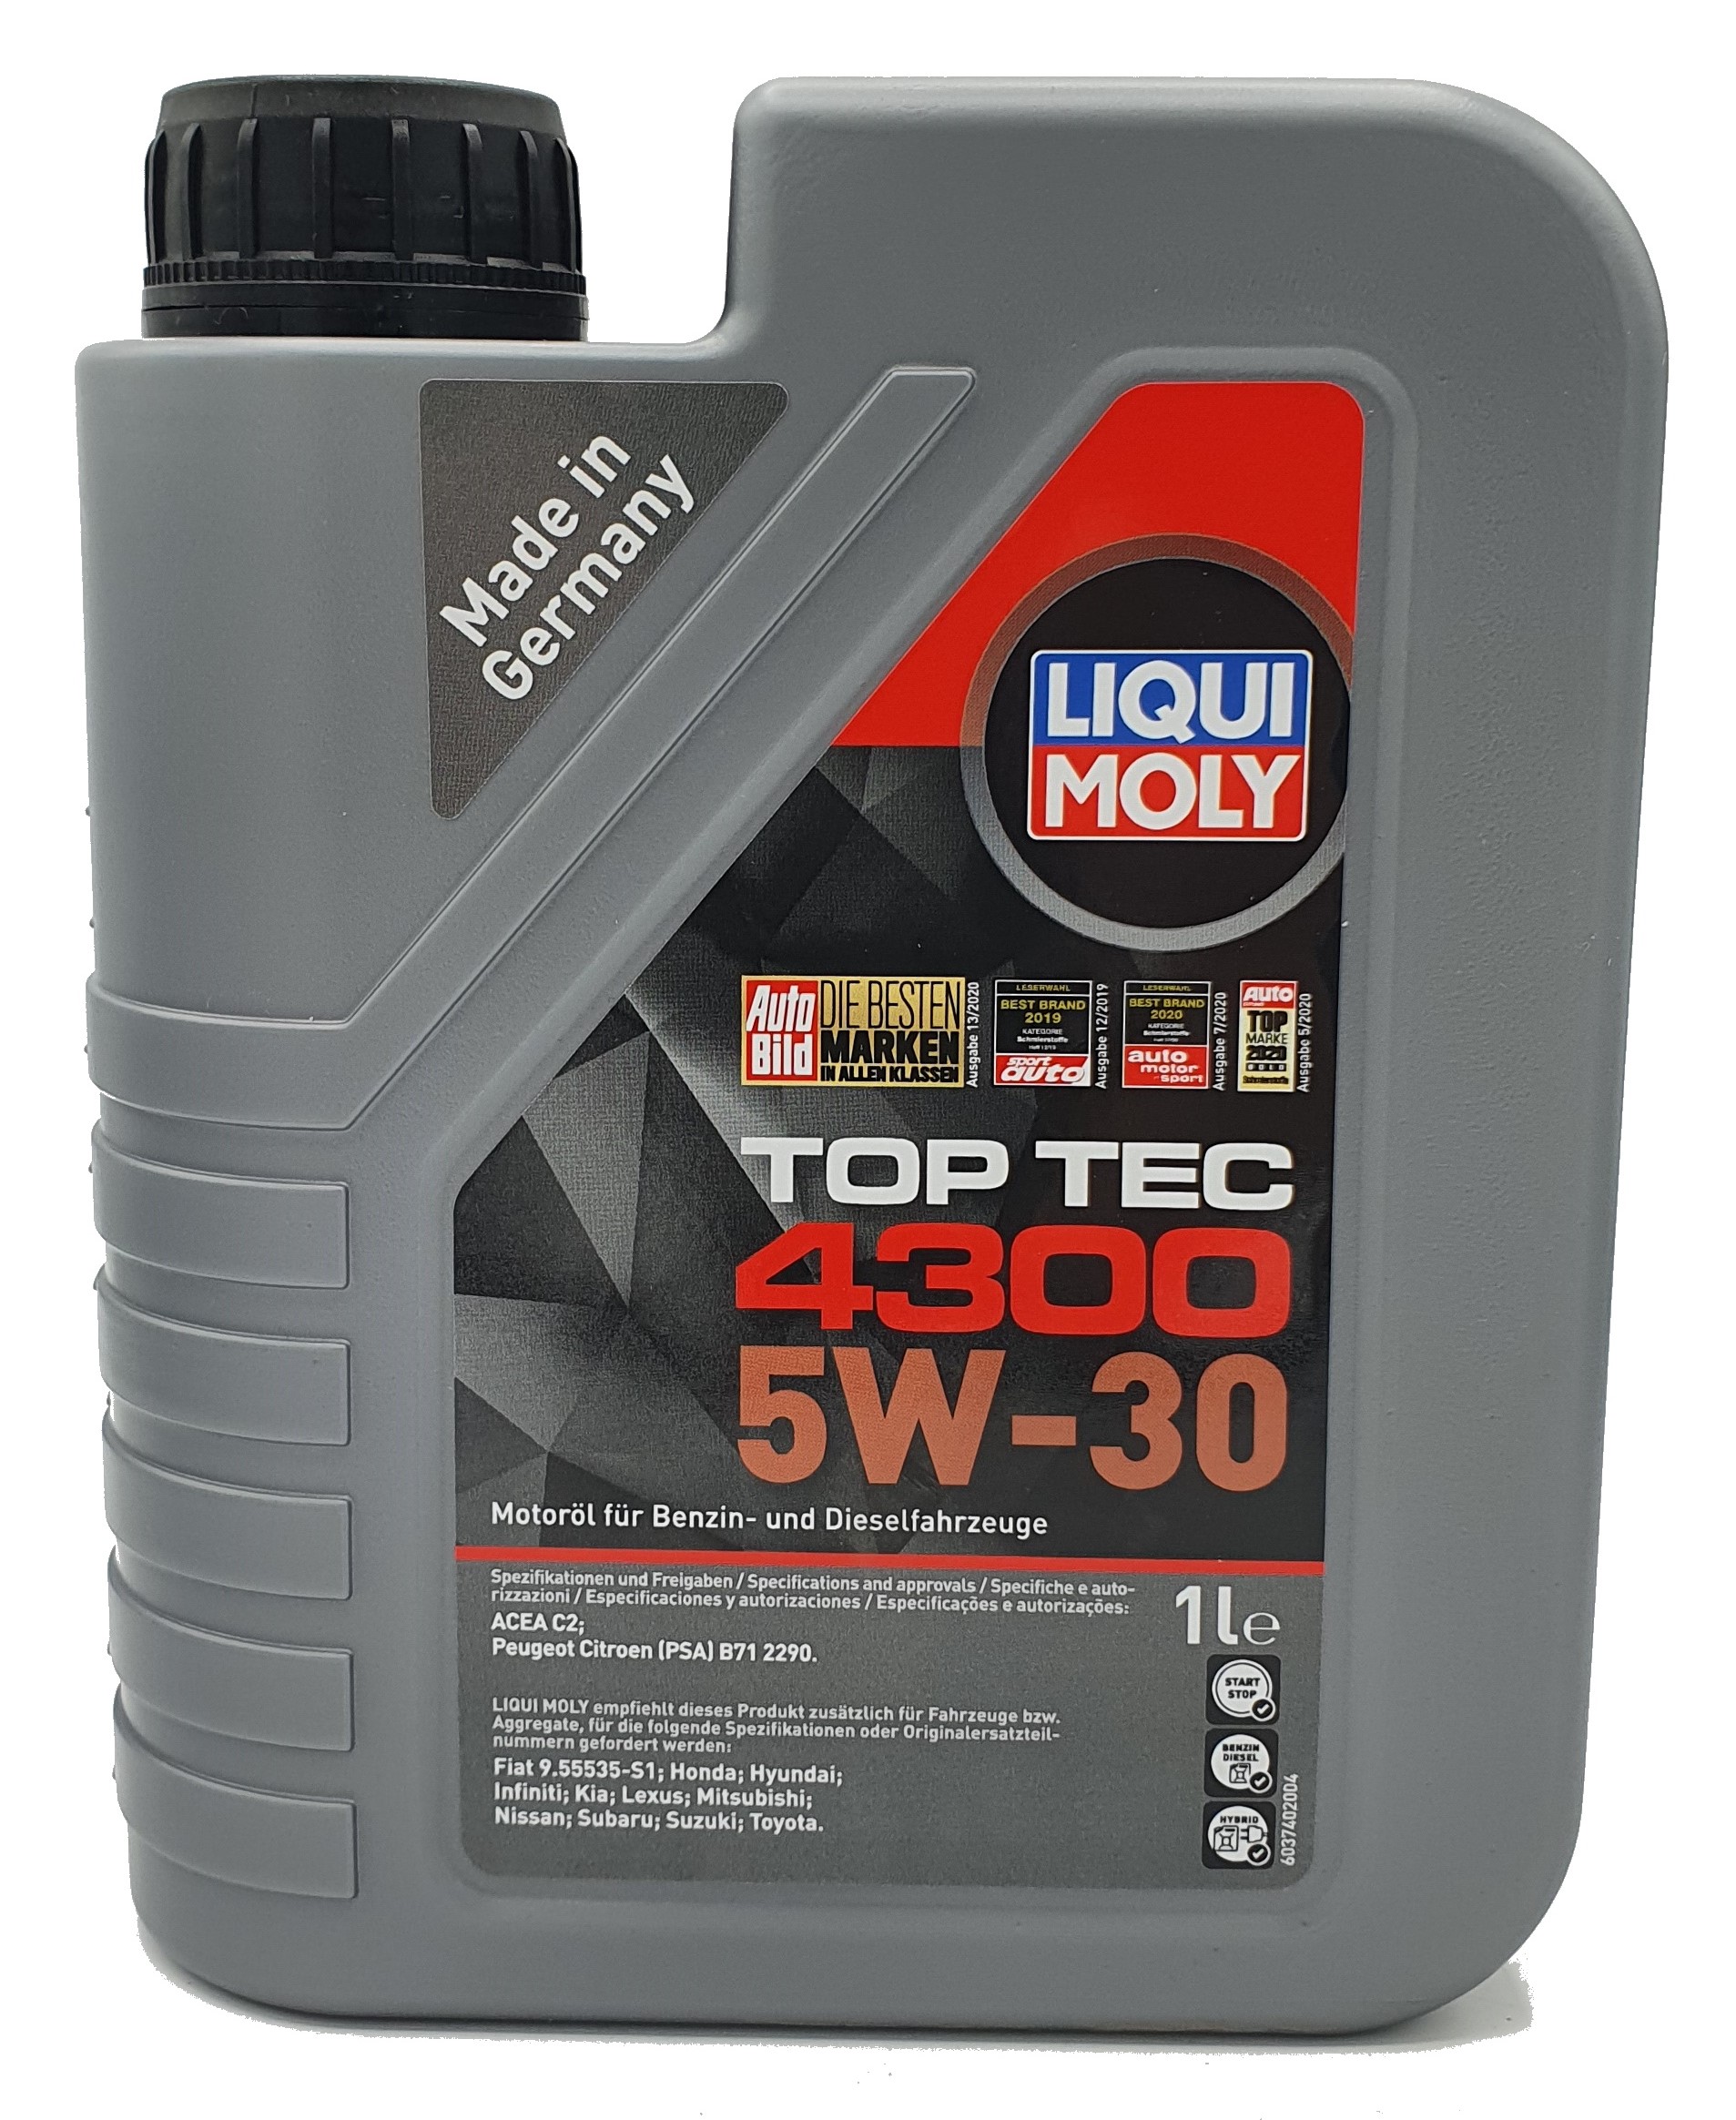 Liqui Moly Top Tec 4300 5W-30 4x1 Liter